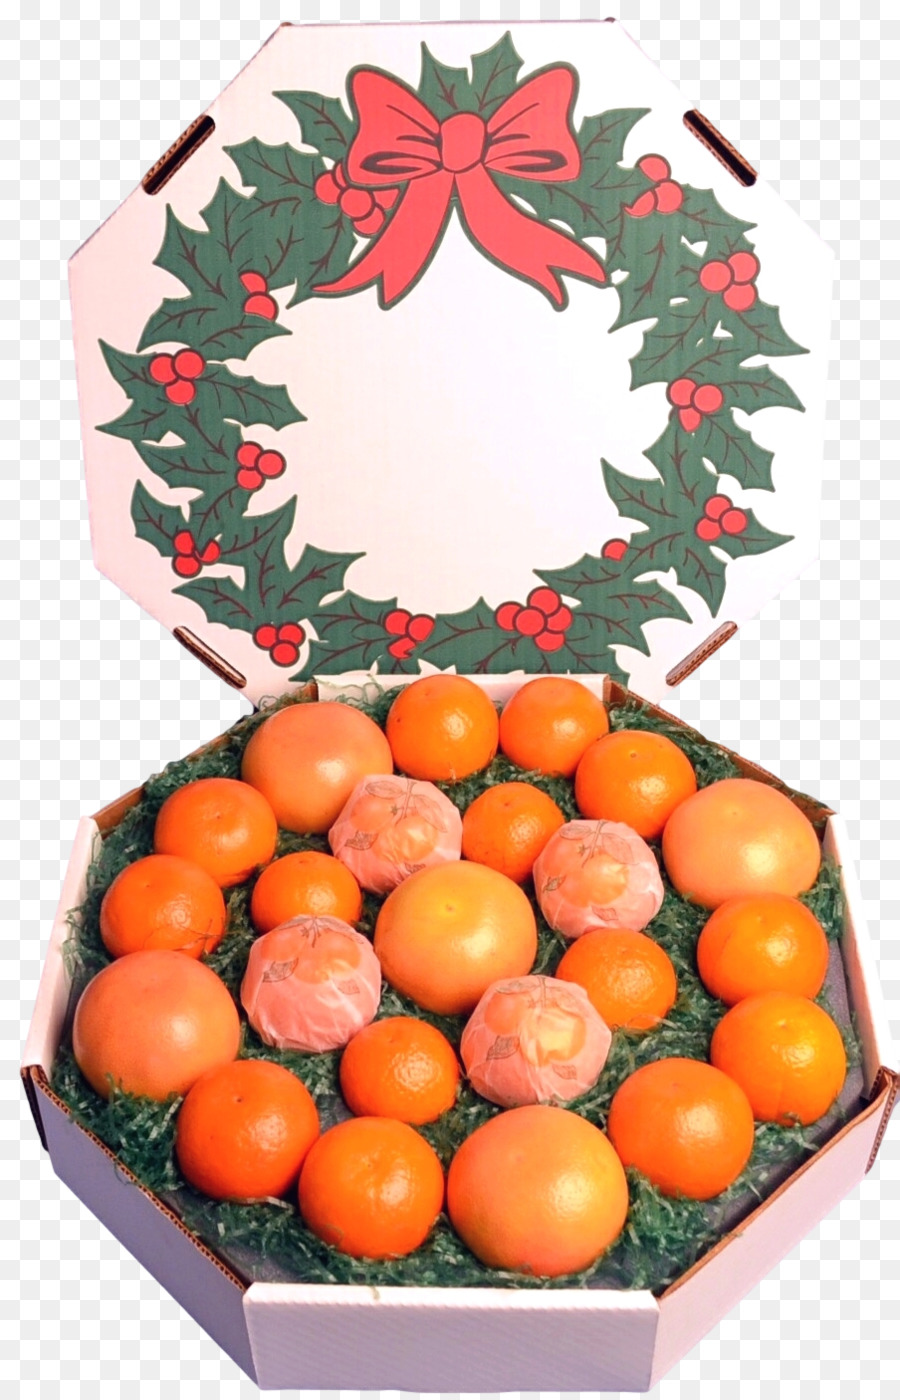 Mandarino, Mandarino, Clementine Florida - pompelmo